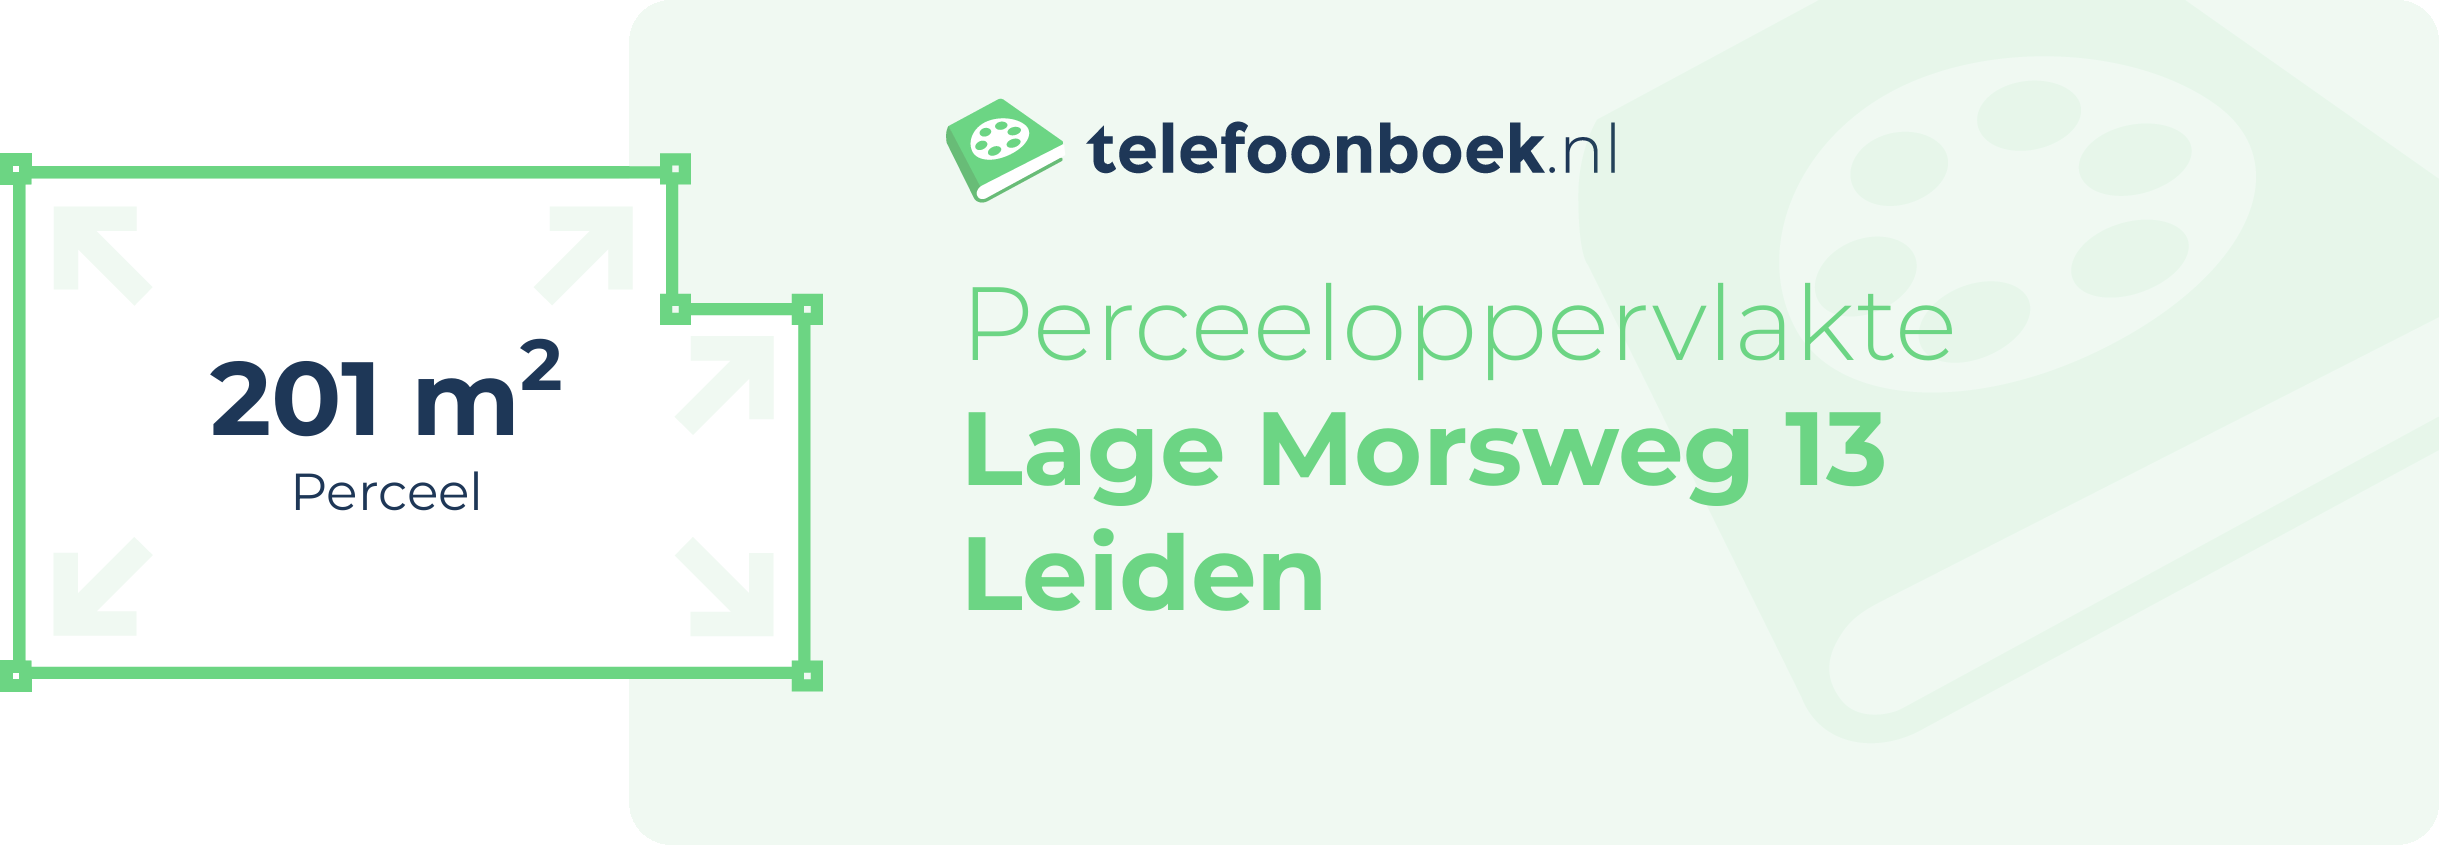 Perceeloppervlakte Lage Morsweg 13 Leiden